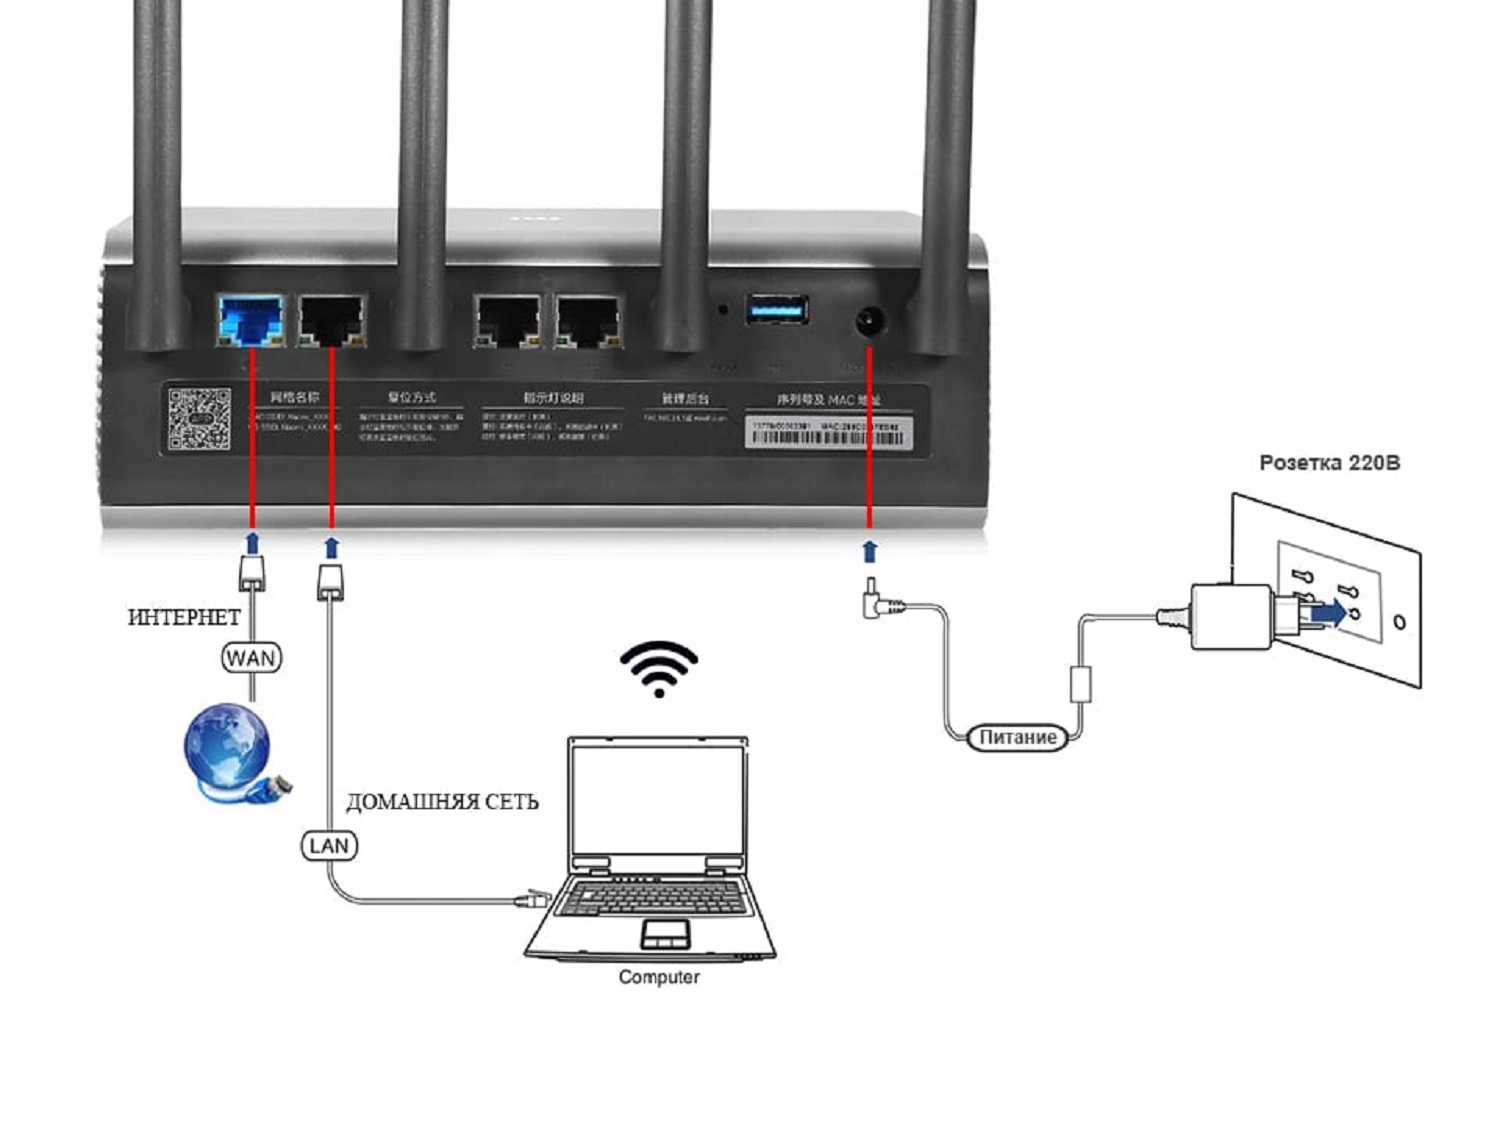 Усилитель wifi сигнала xiaomi mi amplifier - как подключить и настроить usb повторитель (репитер) на ноутбуке или компьютере windows?